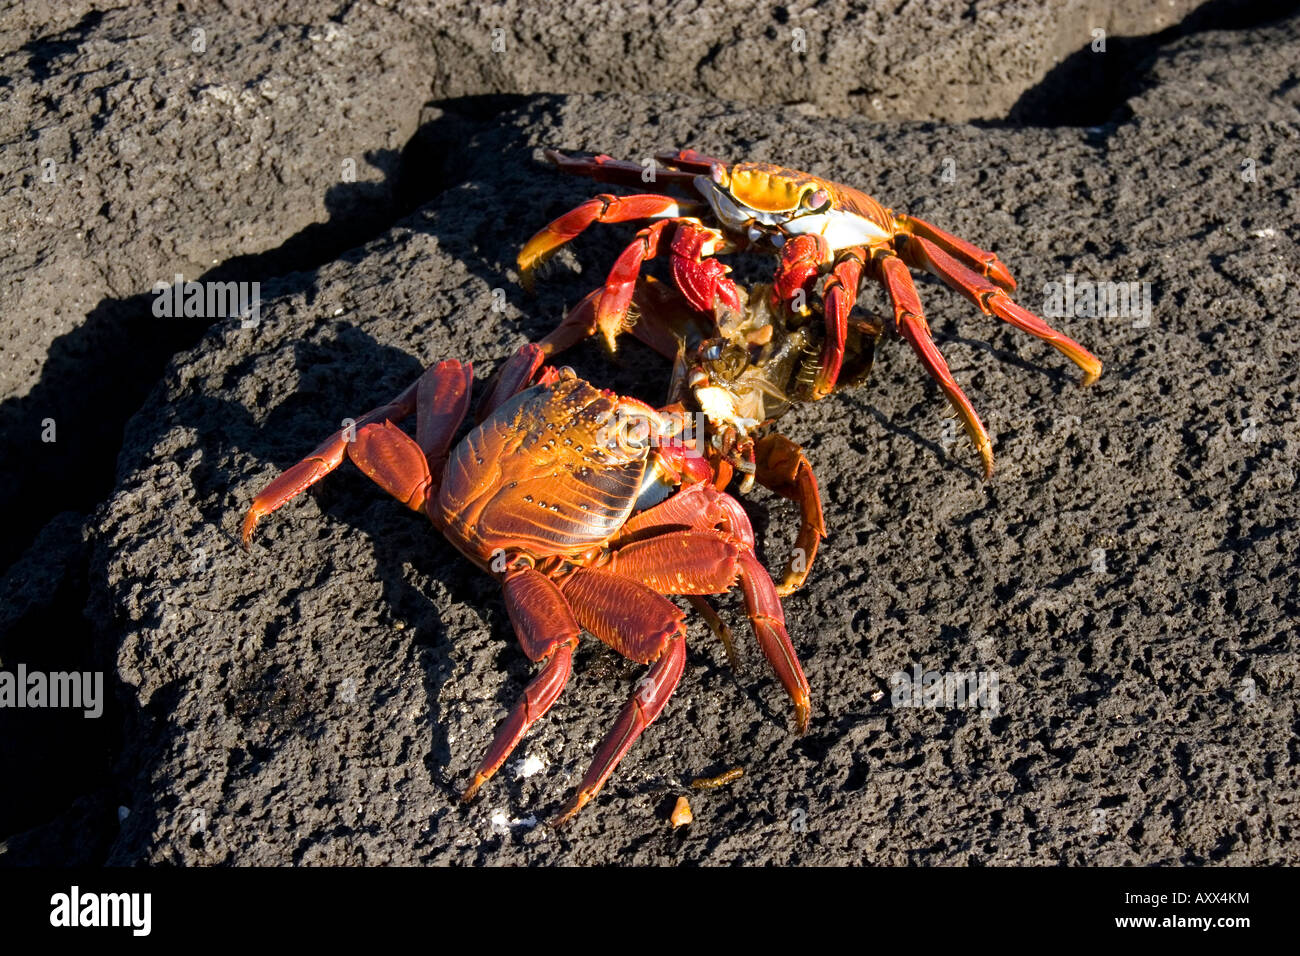 Deux crabes sally light Pied se nourrissent d'un crabe tiers Banque D'Images